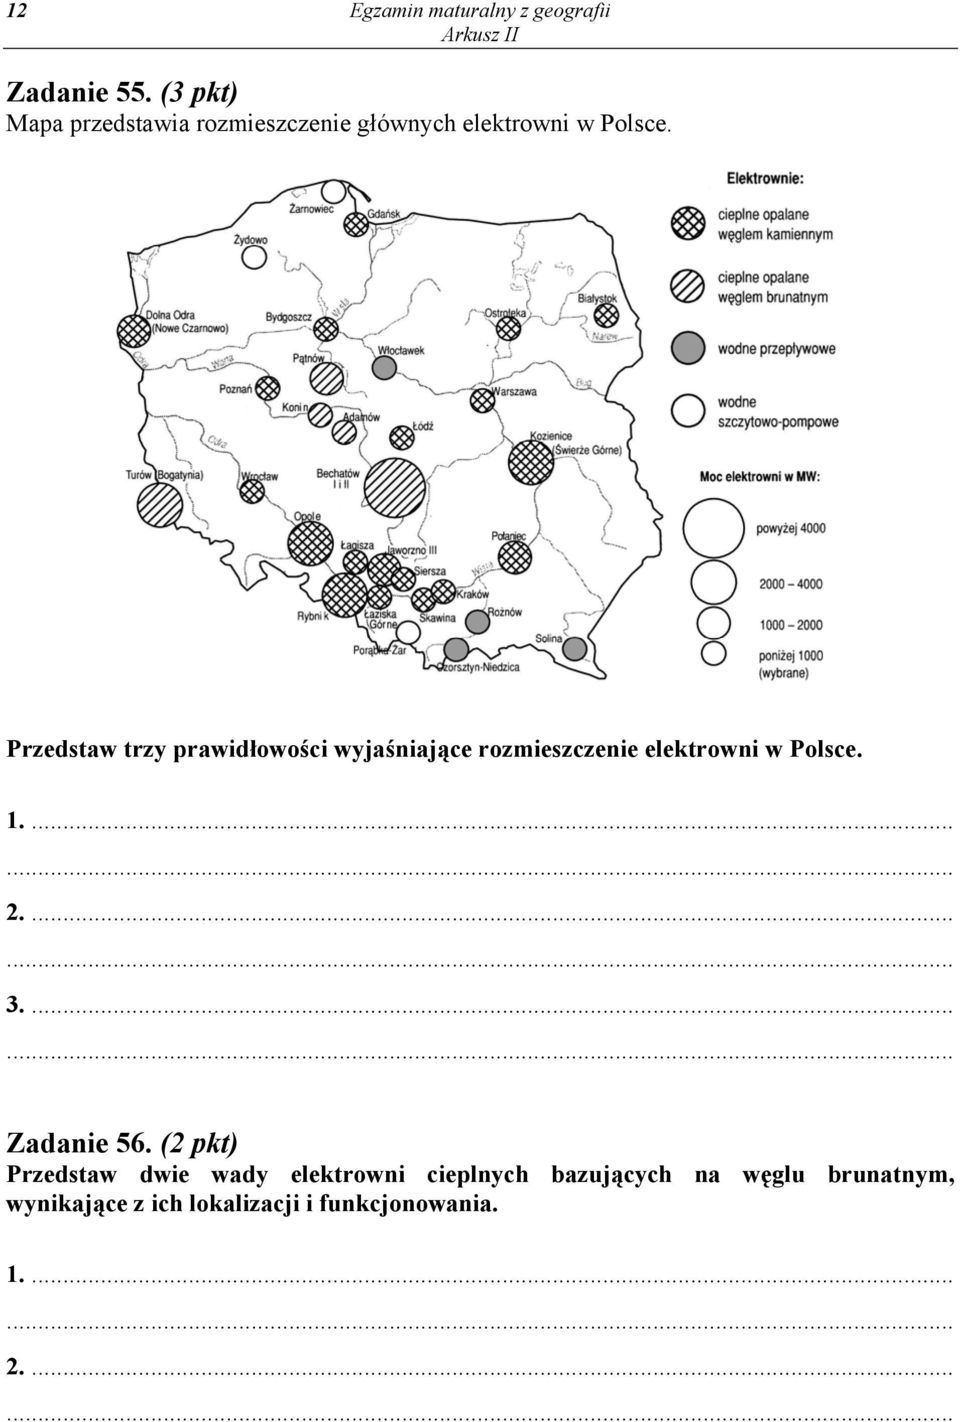 Przedstaw trzy prawidłowości wyjaśniające rozmieszczenie elektrowni w Polsce. 3.